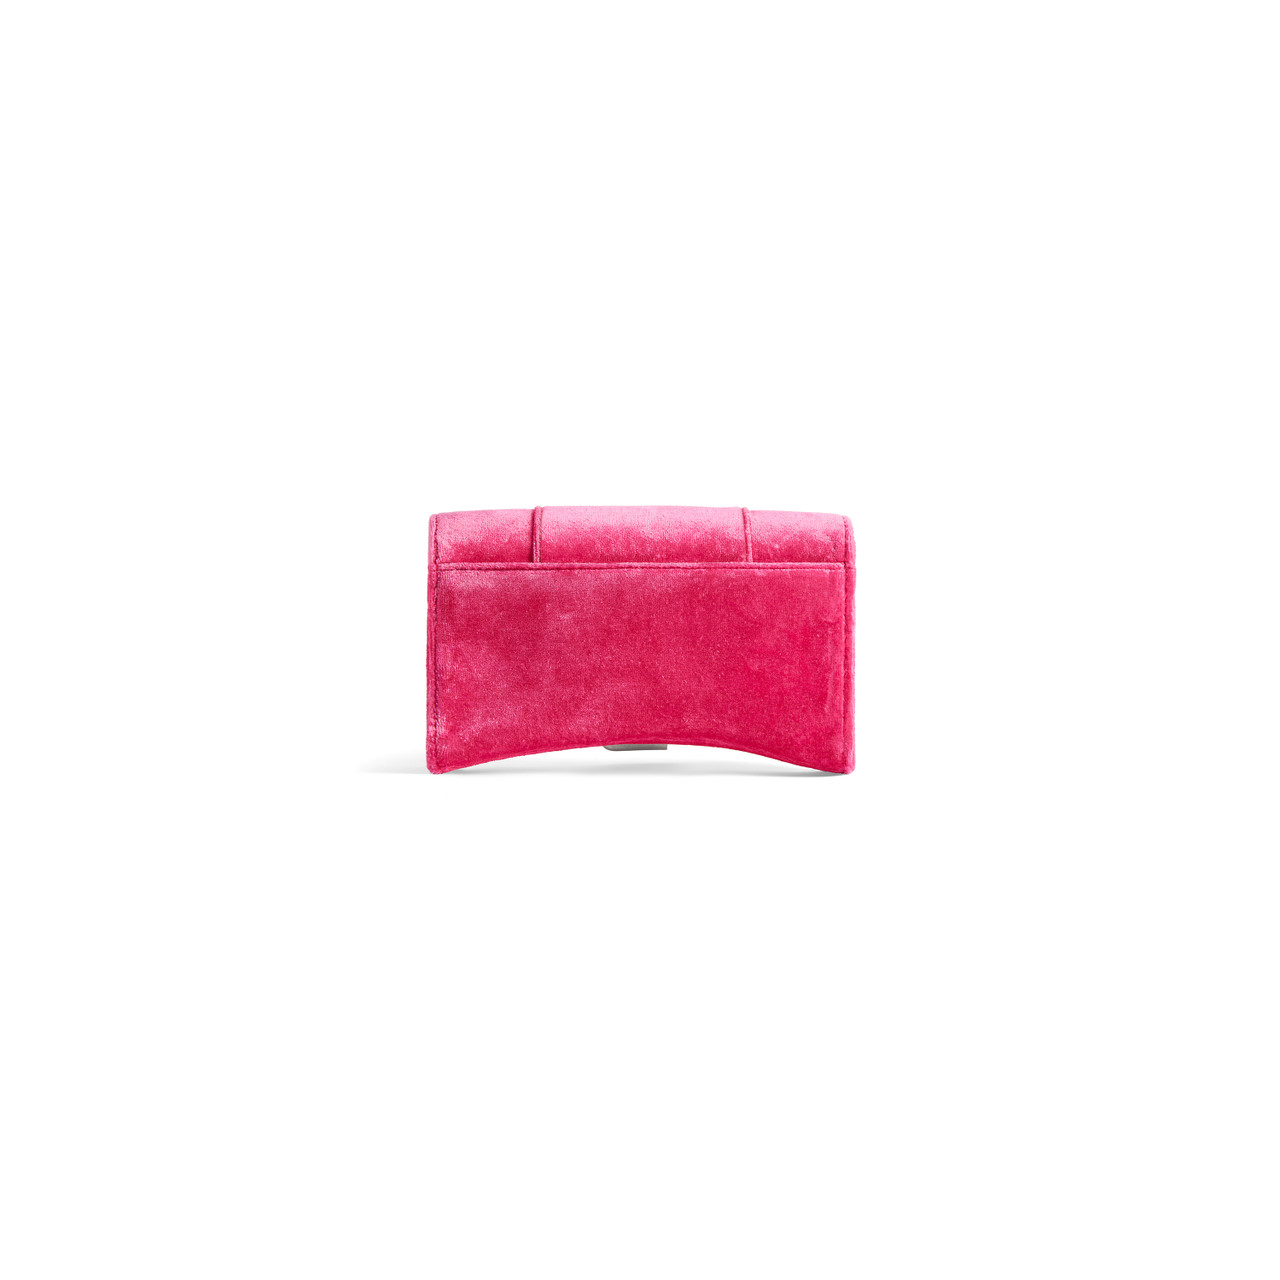 Gucci Dionysus Small Suede Shoulder Bag, Bright Pink | Gucci handbags,  Shoulder bag, Gucci dionysus small